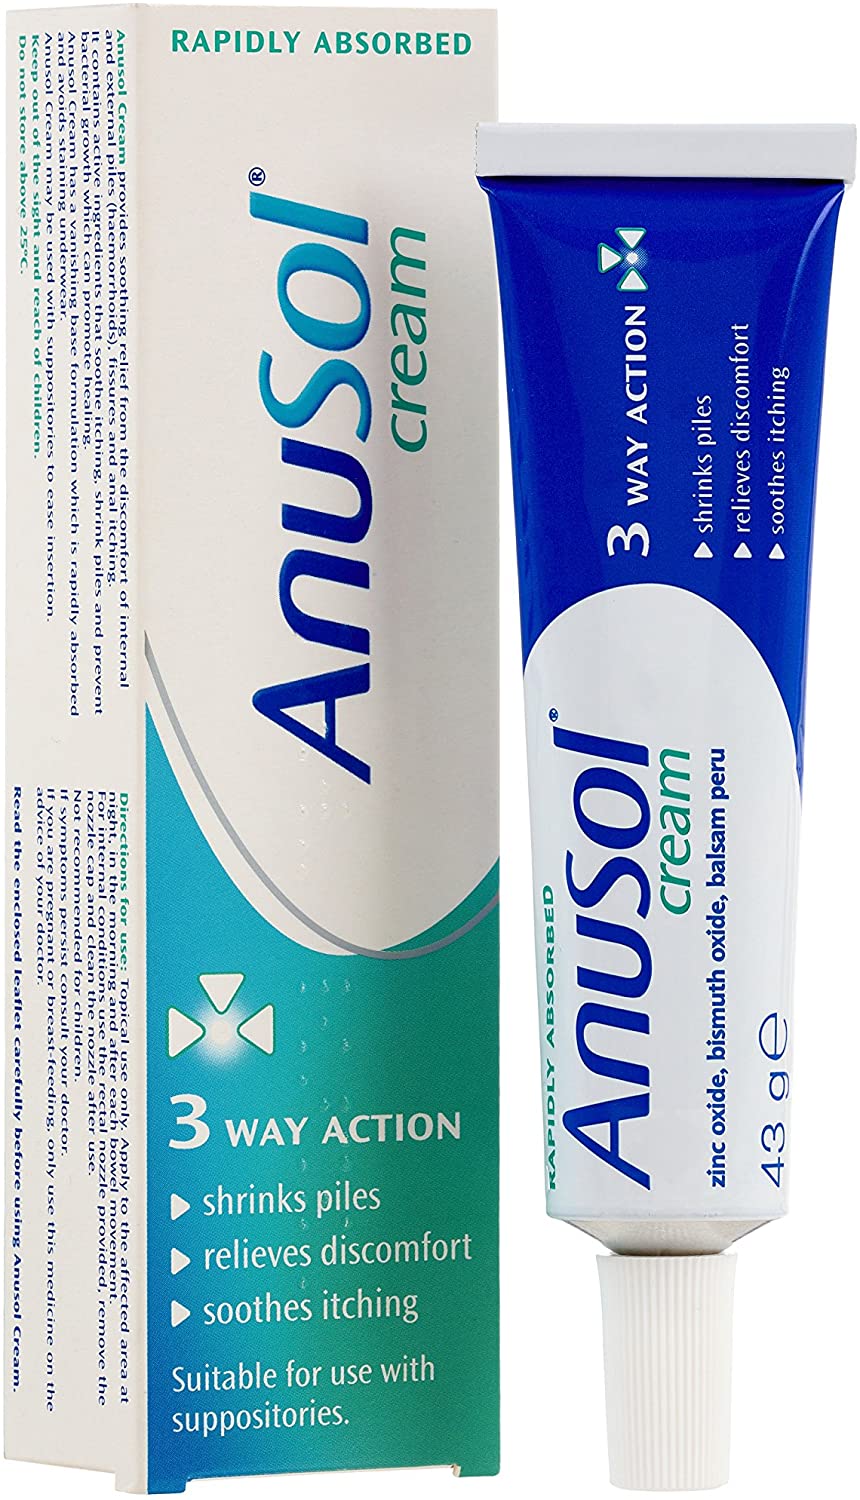 Anusol Cream for Haemorrhoids Treatment 